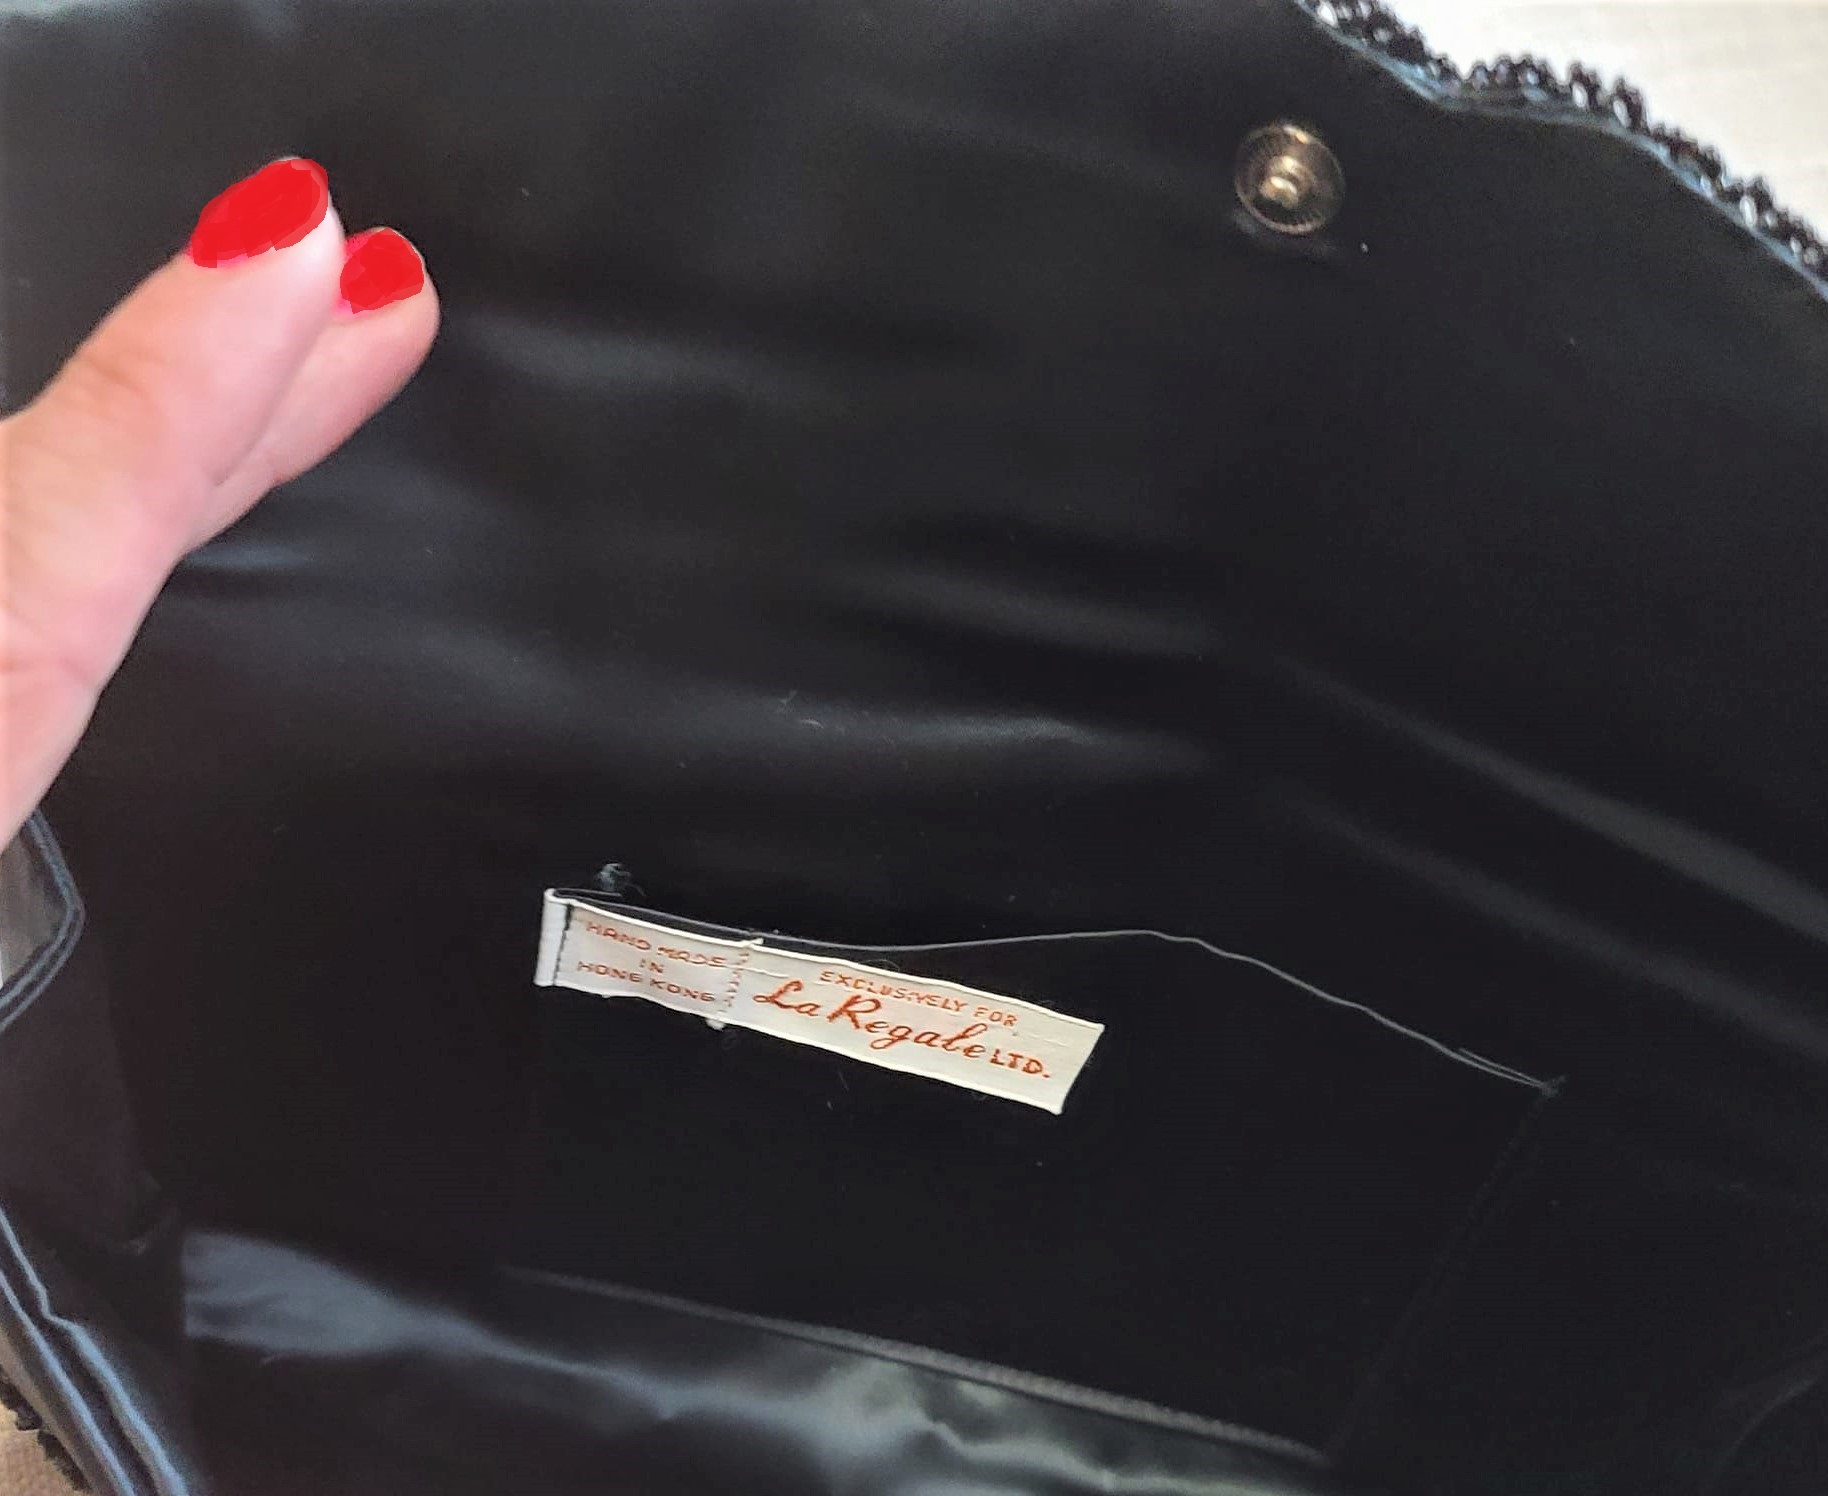 La Regale vintage beaded black purse clutch in original box